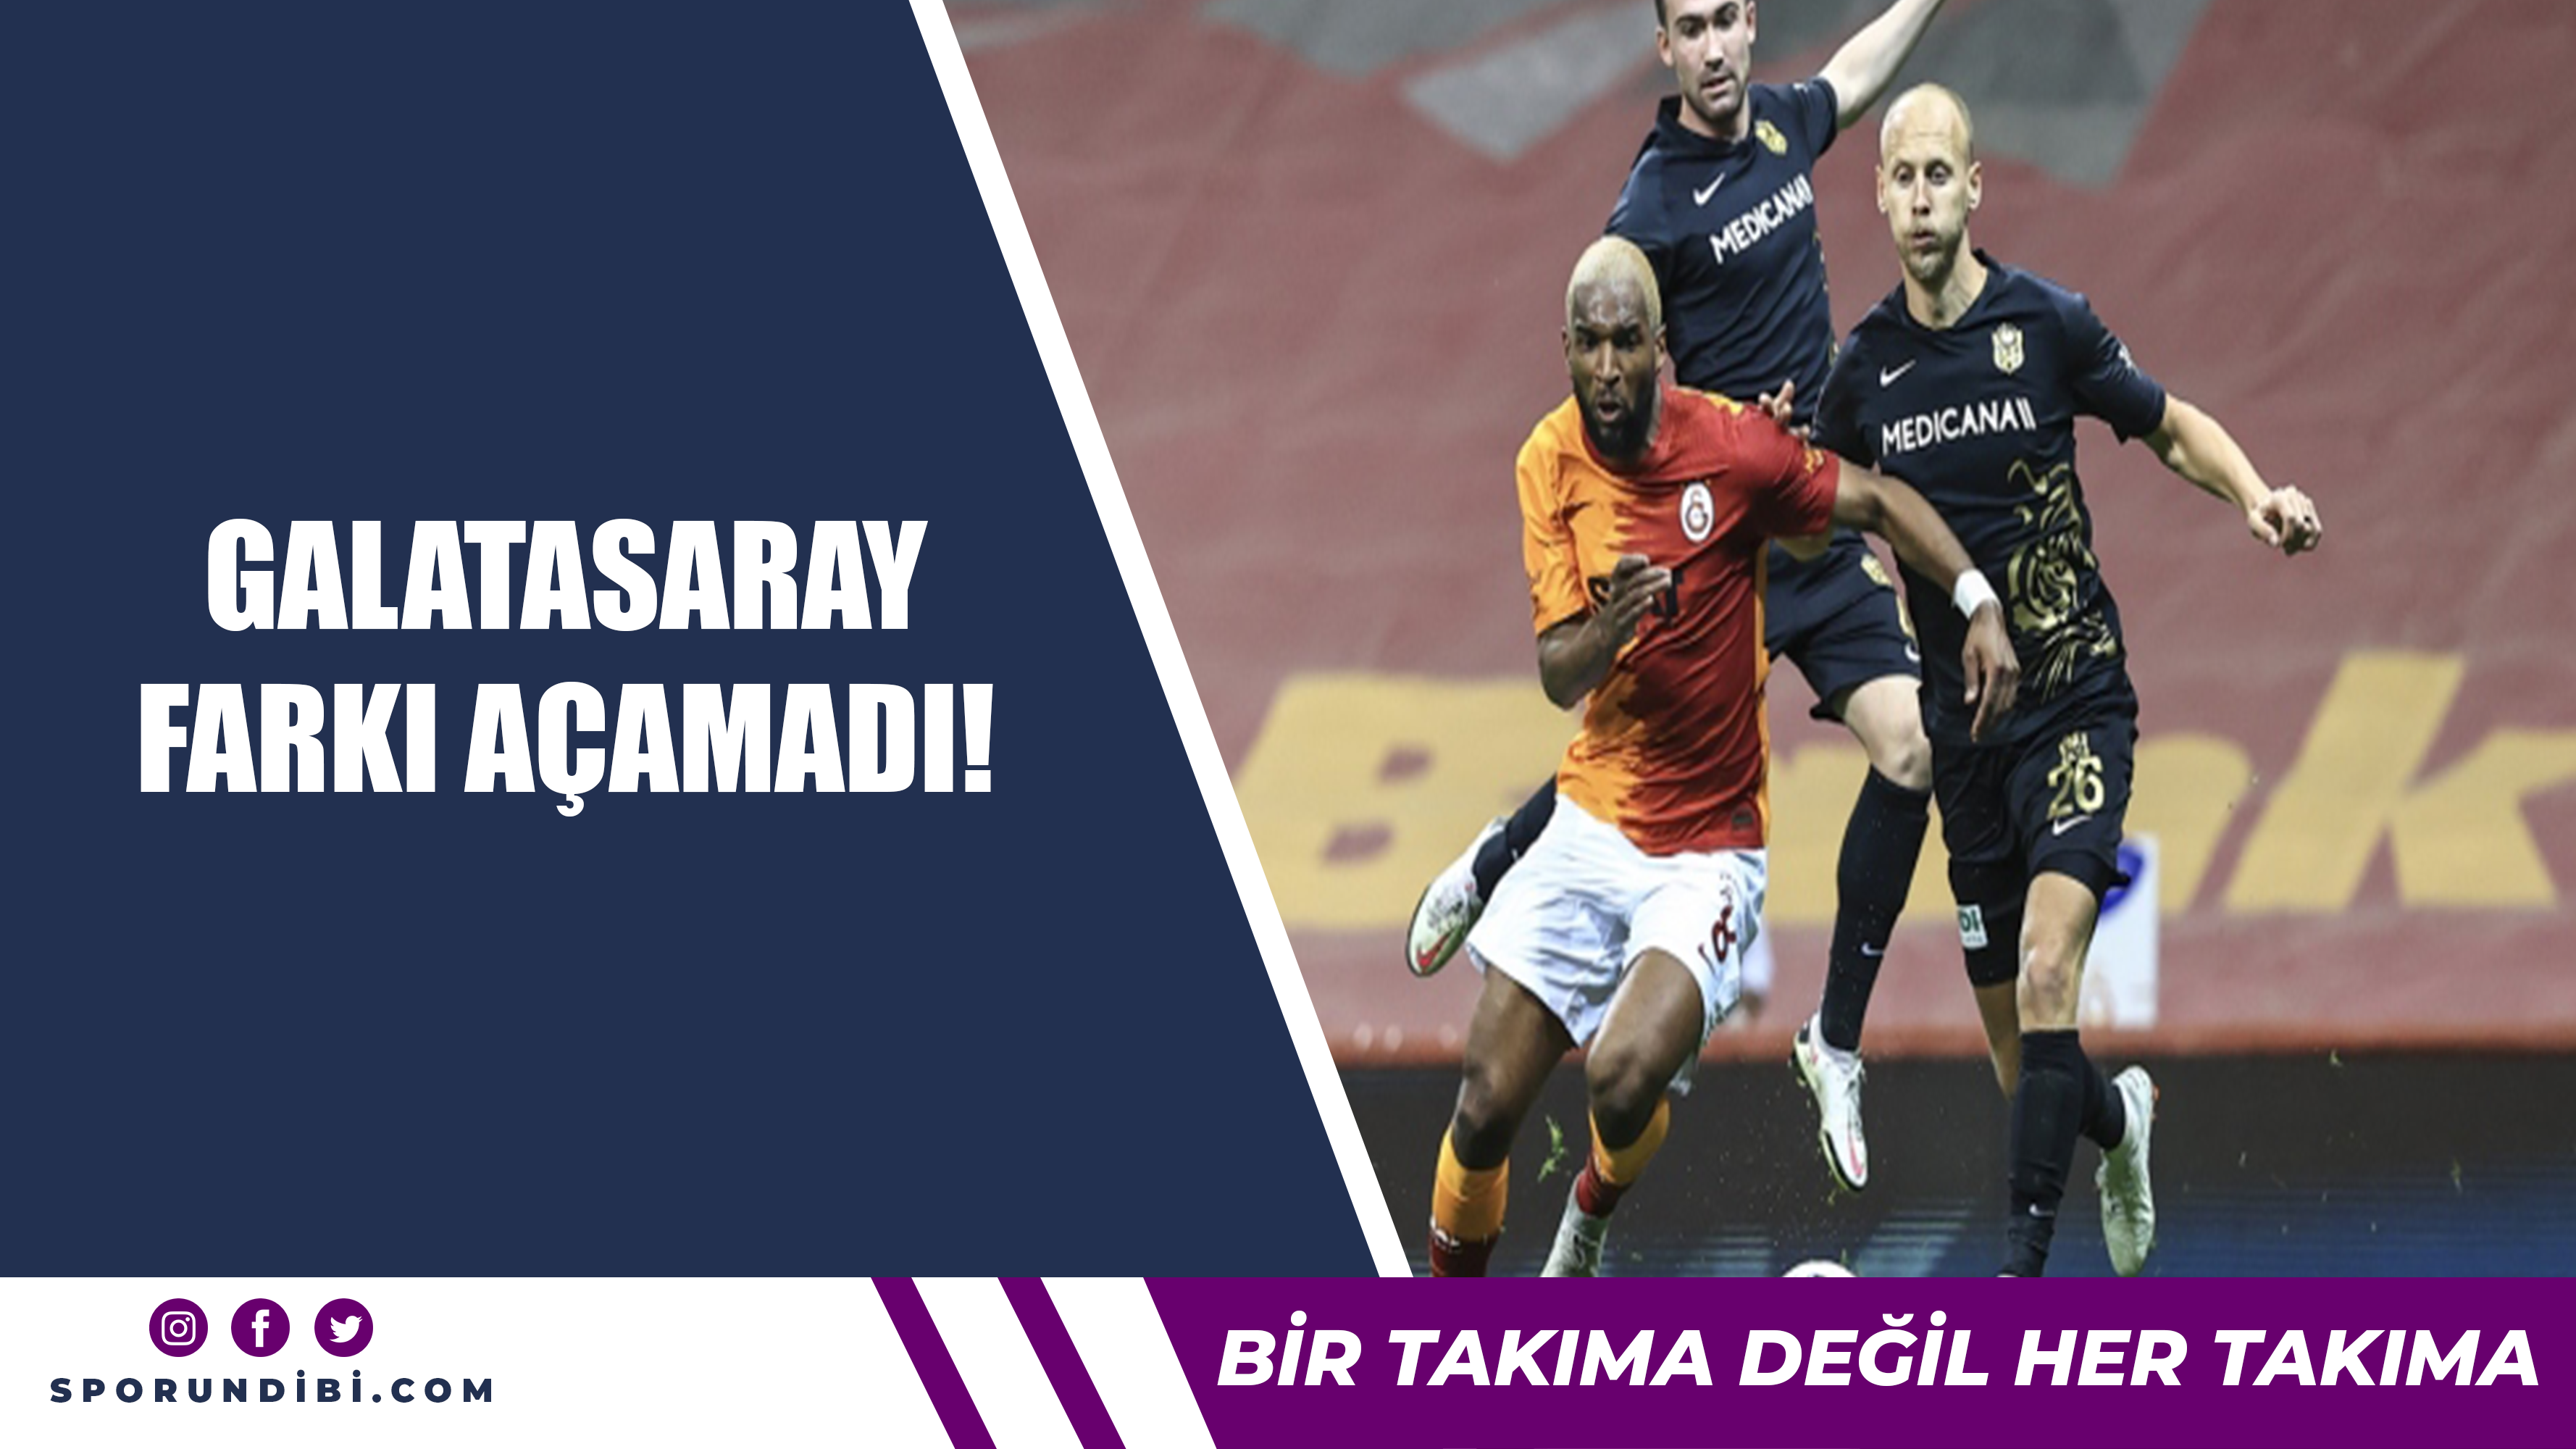 Galatasaray farkı açamadı!